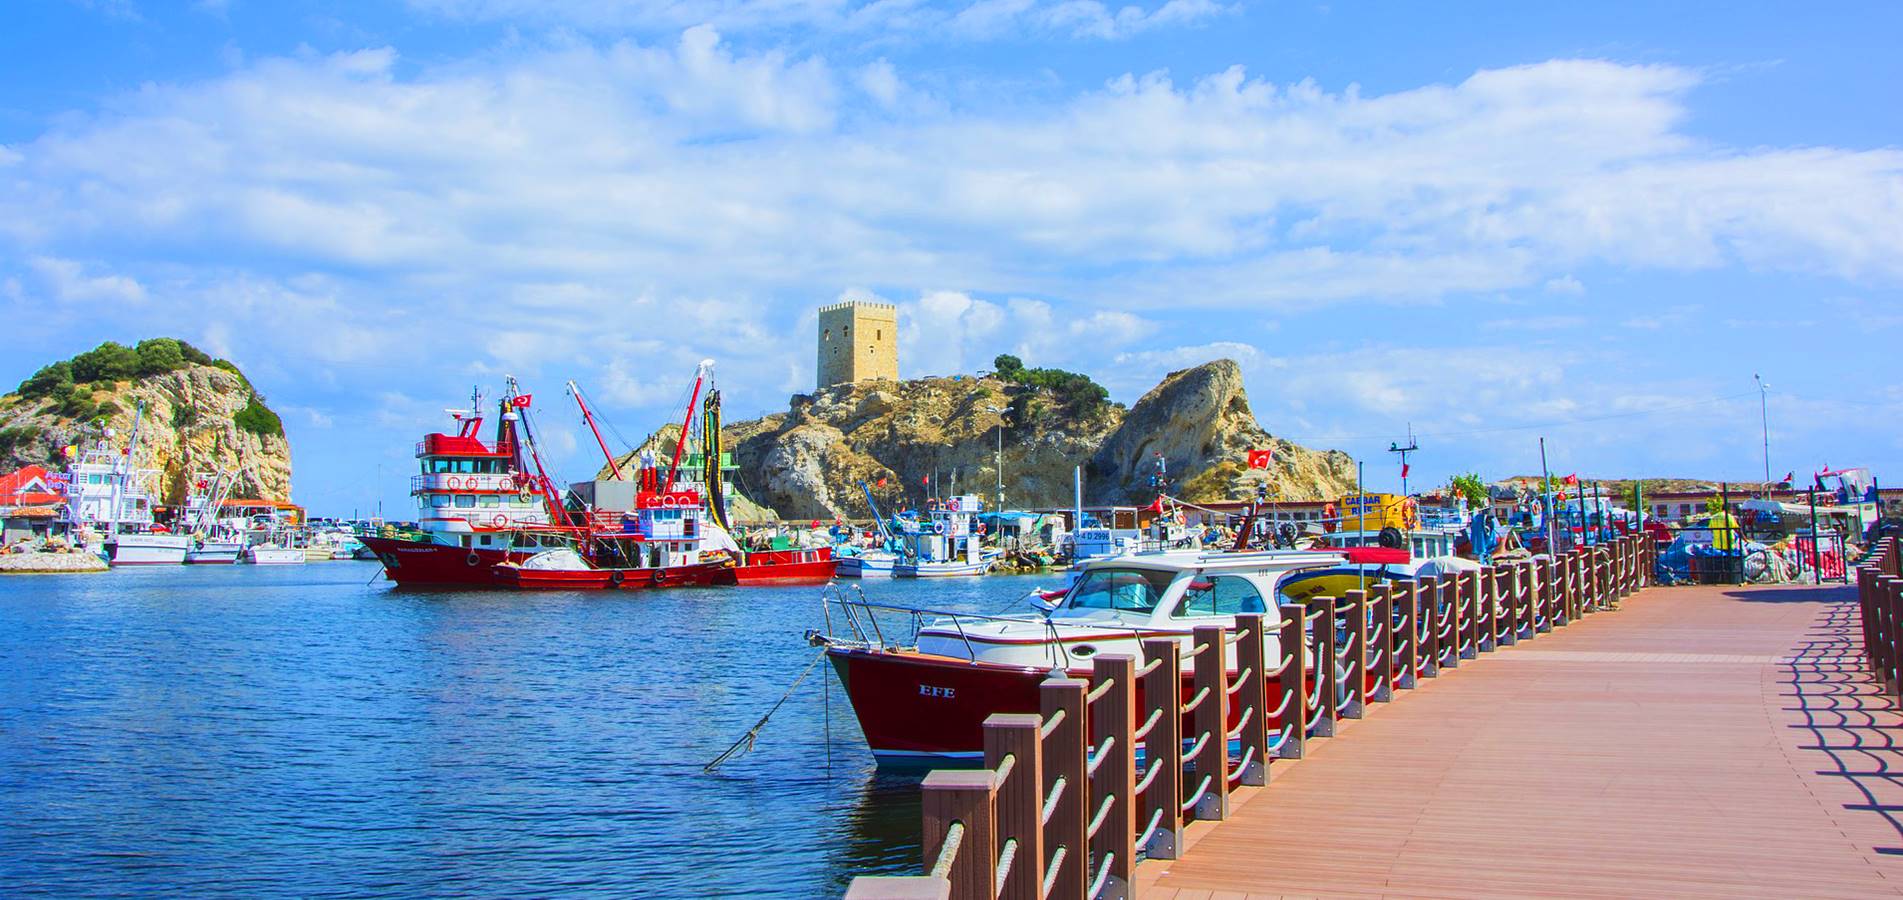 السياحة في تركيا 2021: شركة الكنانة للسياحة و السفر - رحلة شيلا واغوا